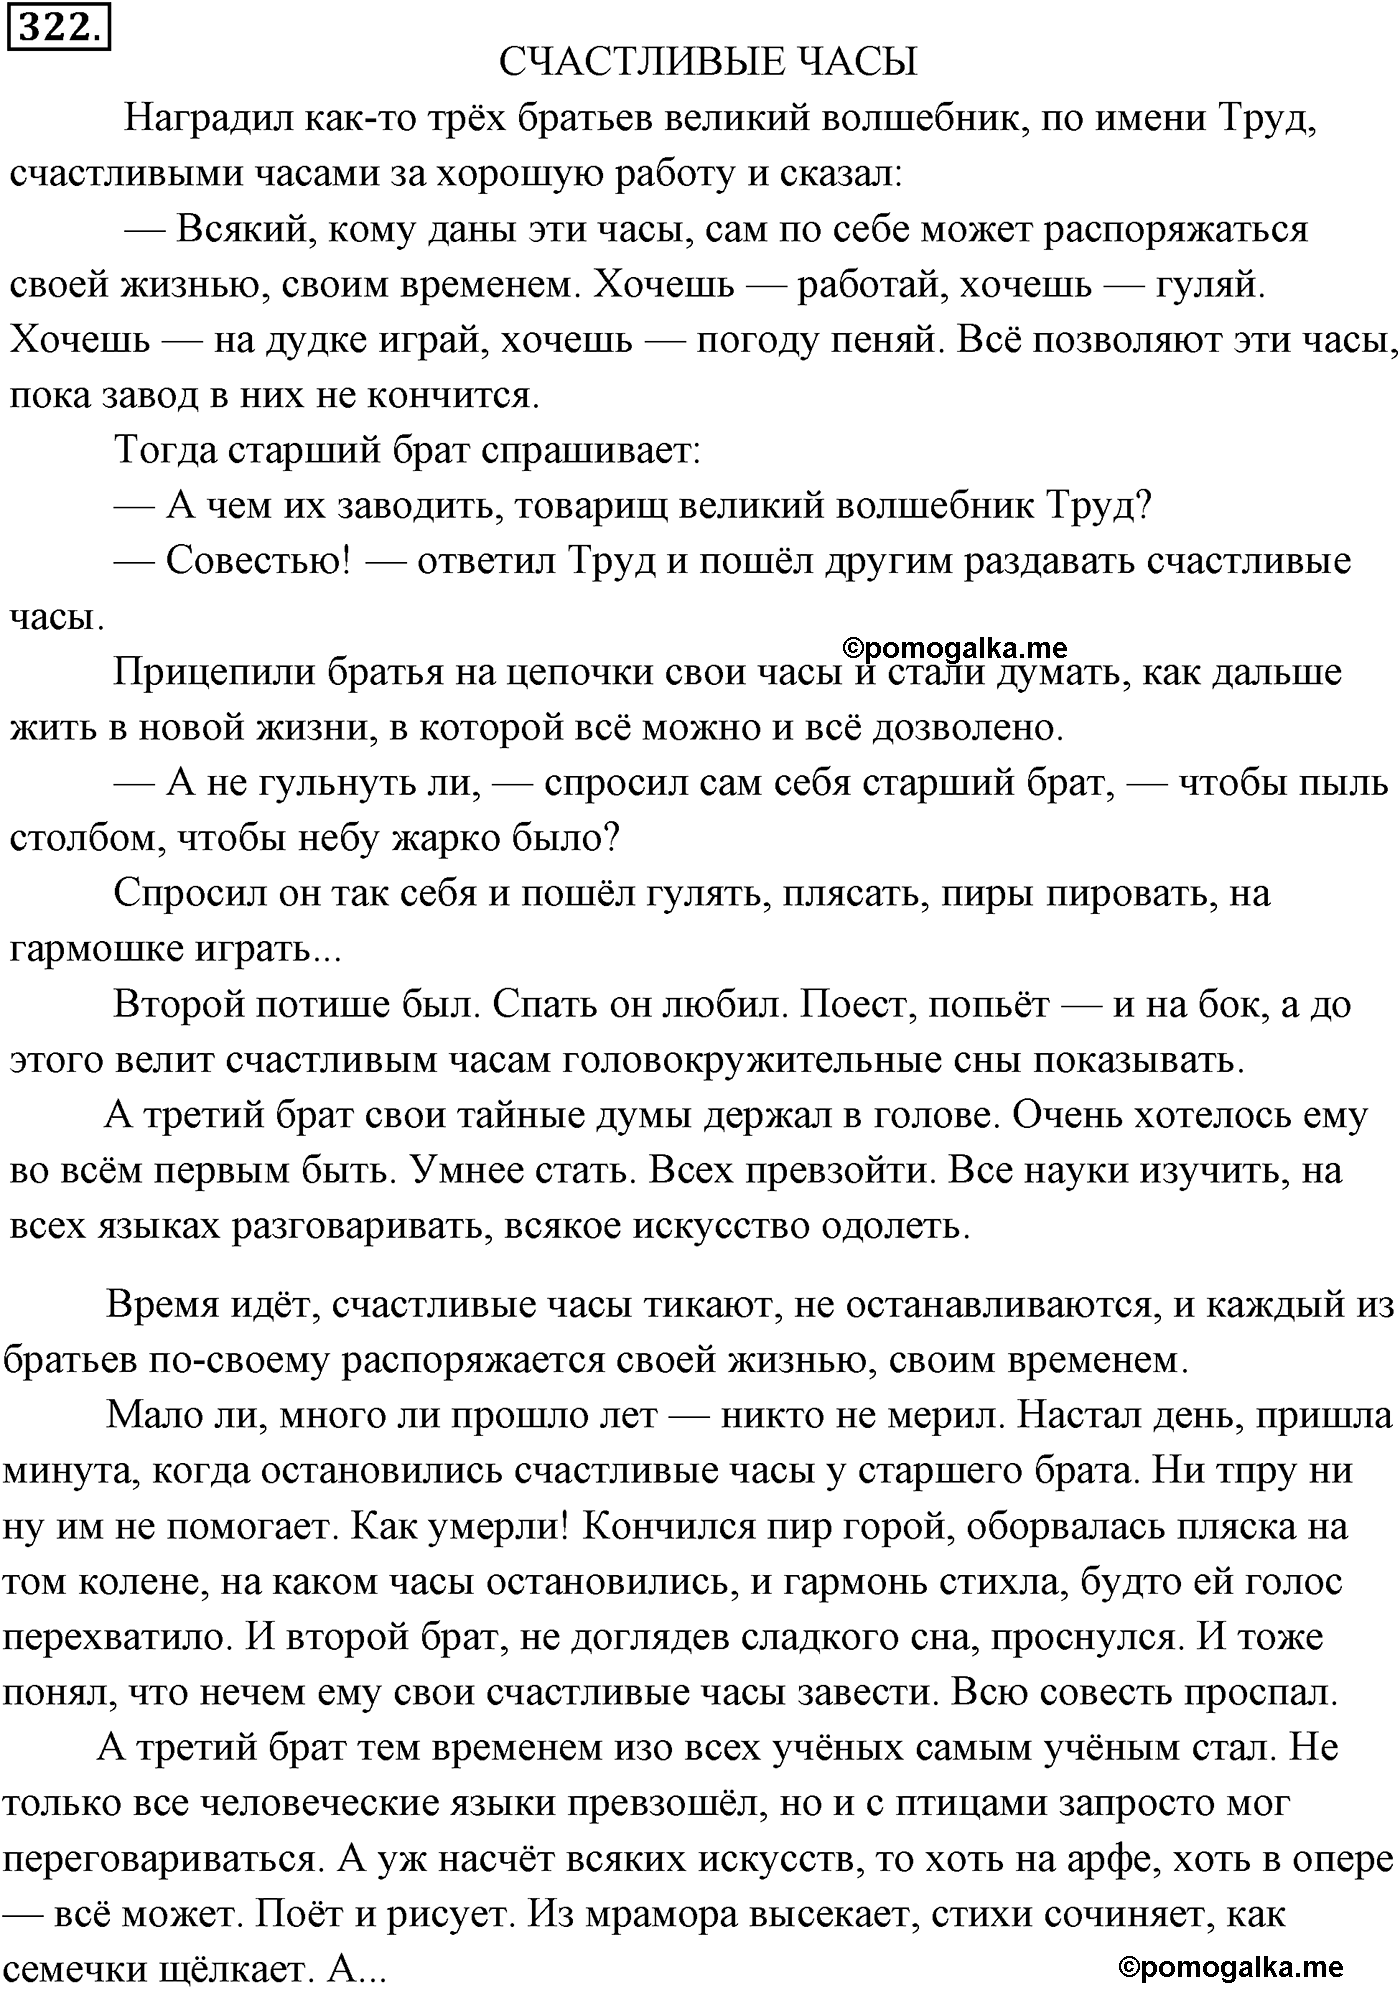 упражнение №322 русский язык 9 класс Разумовская